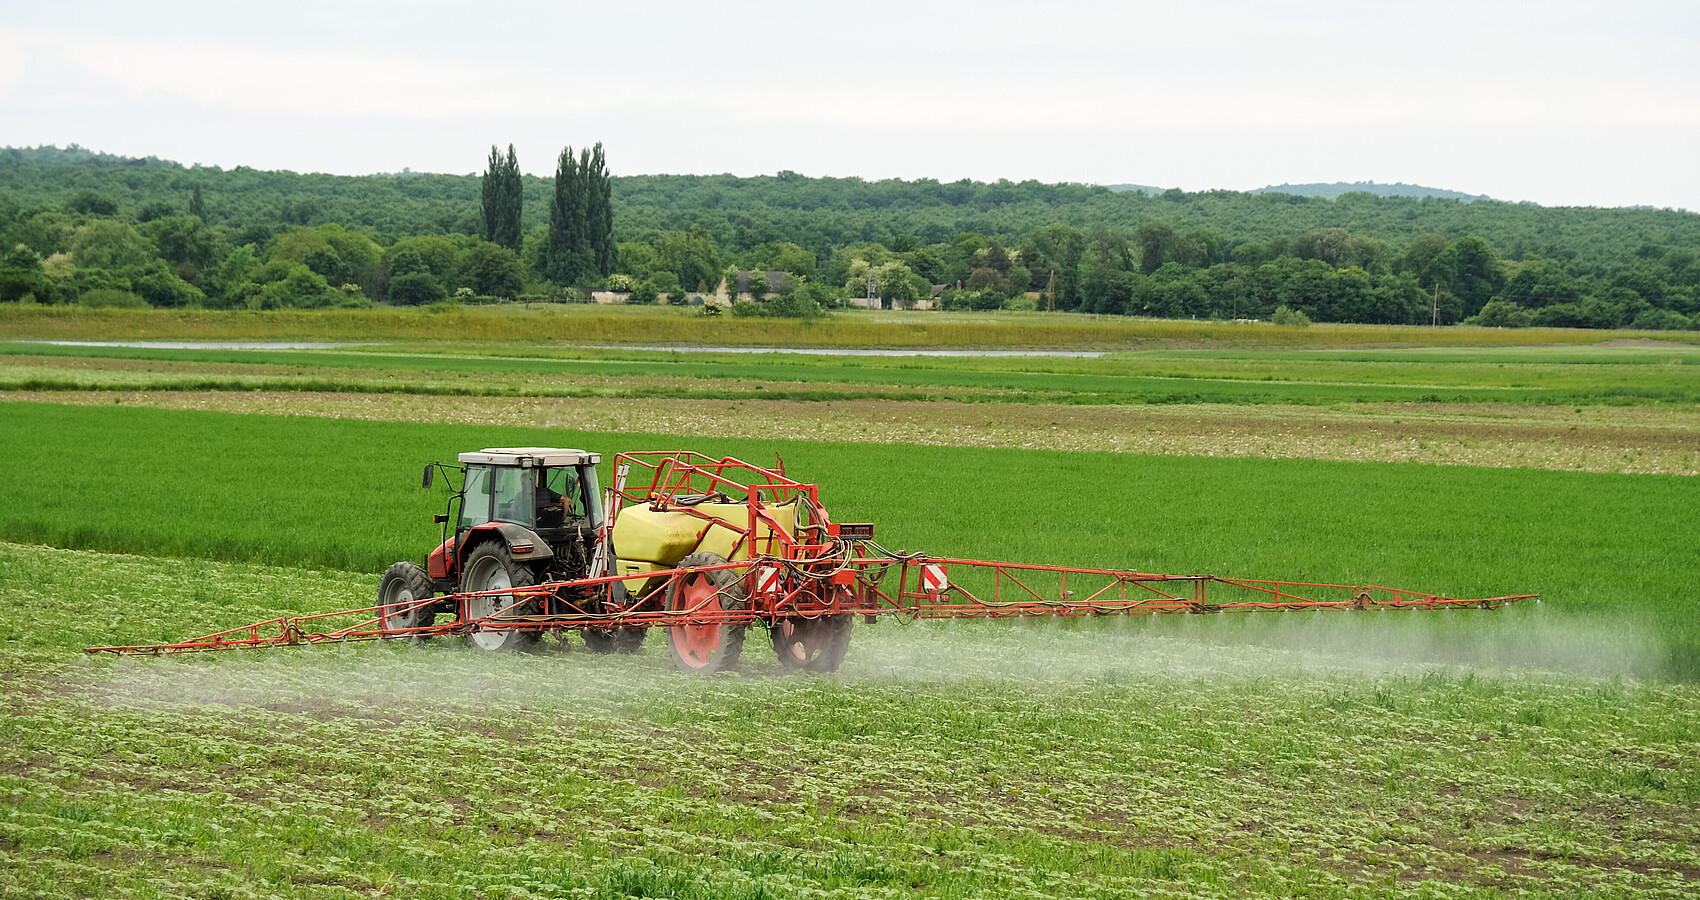 Landwirt mit Traktor sprüht Pestizide oder Dünger auf das Feld